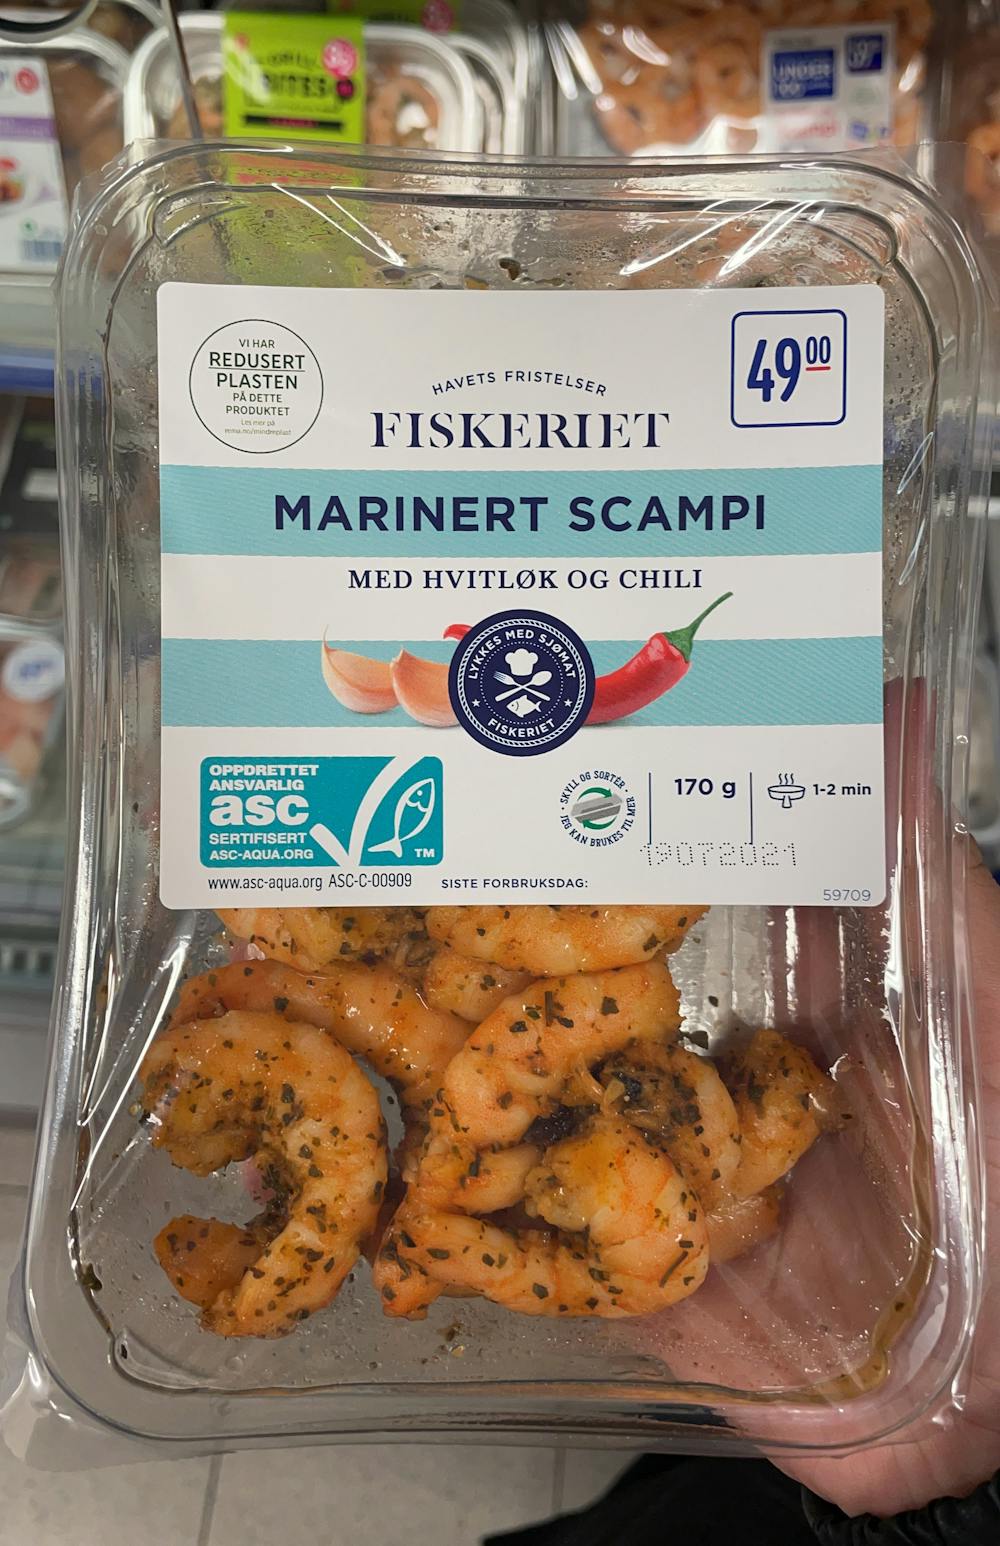 Marinert scampi med hvitløk og chili, Fiskeriet